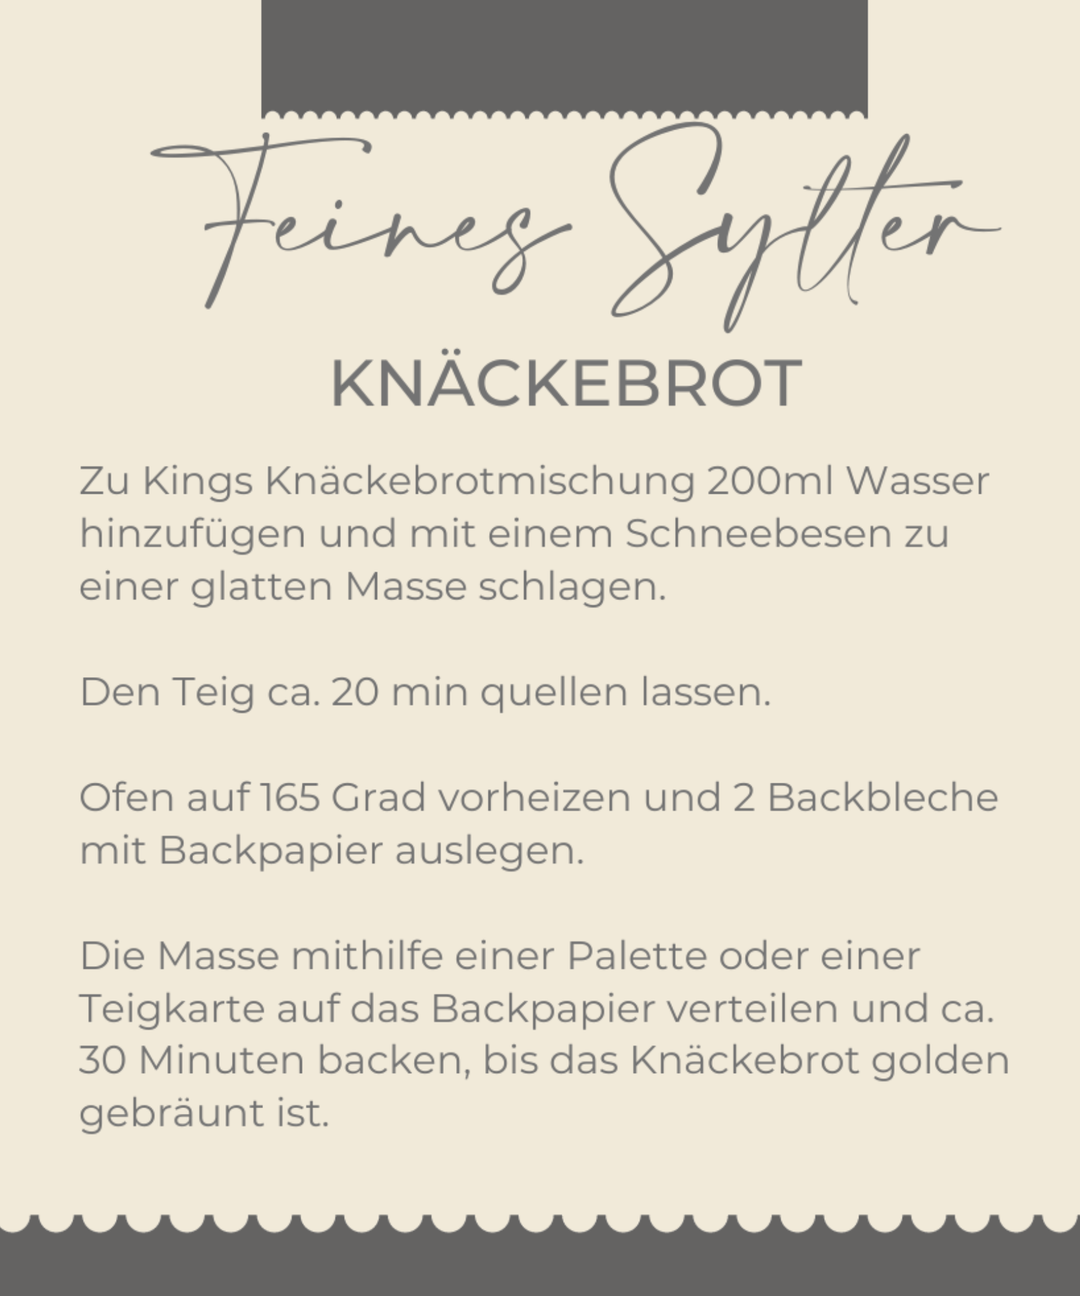 Das Bild zeigt eine Rezeptkarte bzw. Kochanleitung auf Deutsch für „Knäckebrotmischung“, eine Knäckebrotsorte der Sylter Manufaktur. Der Text enthält Schritte für